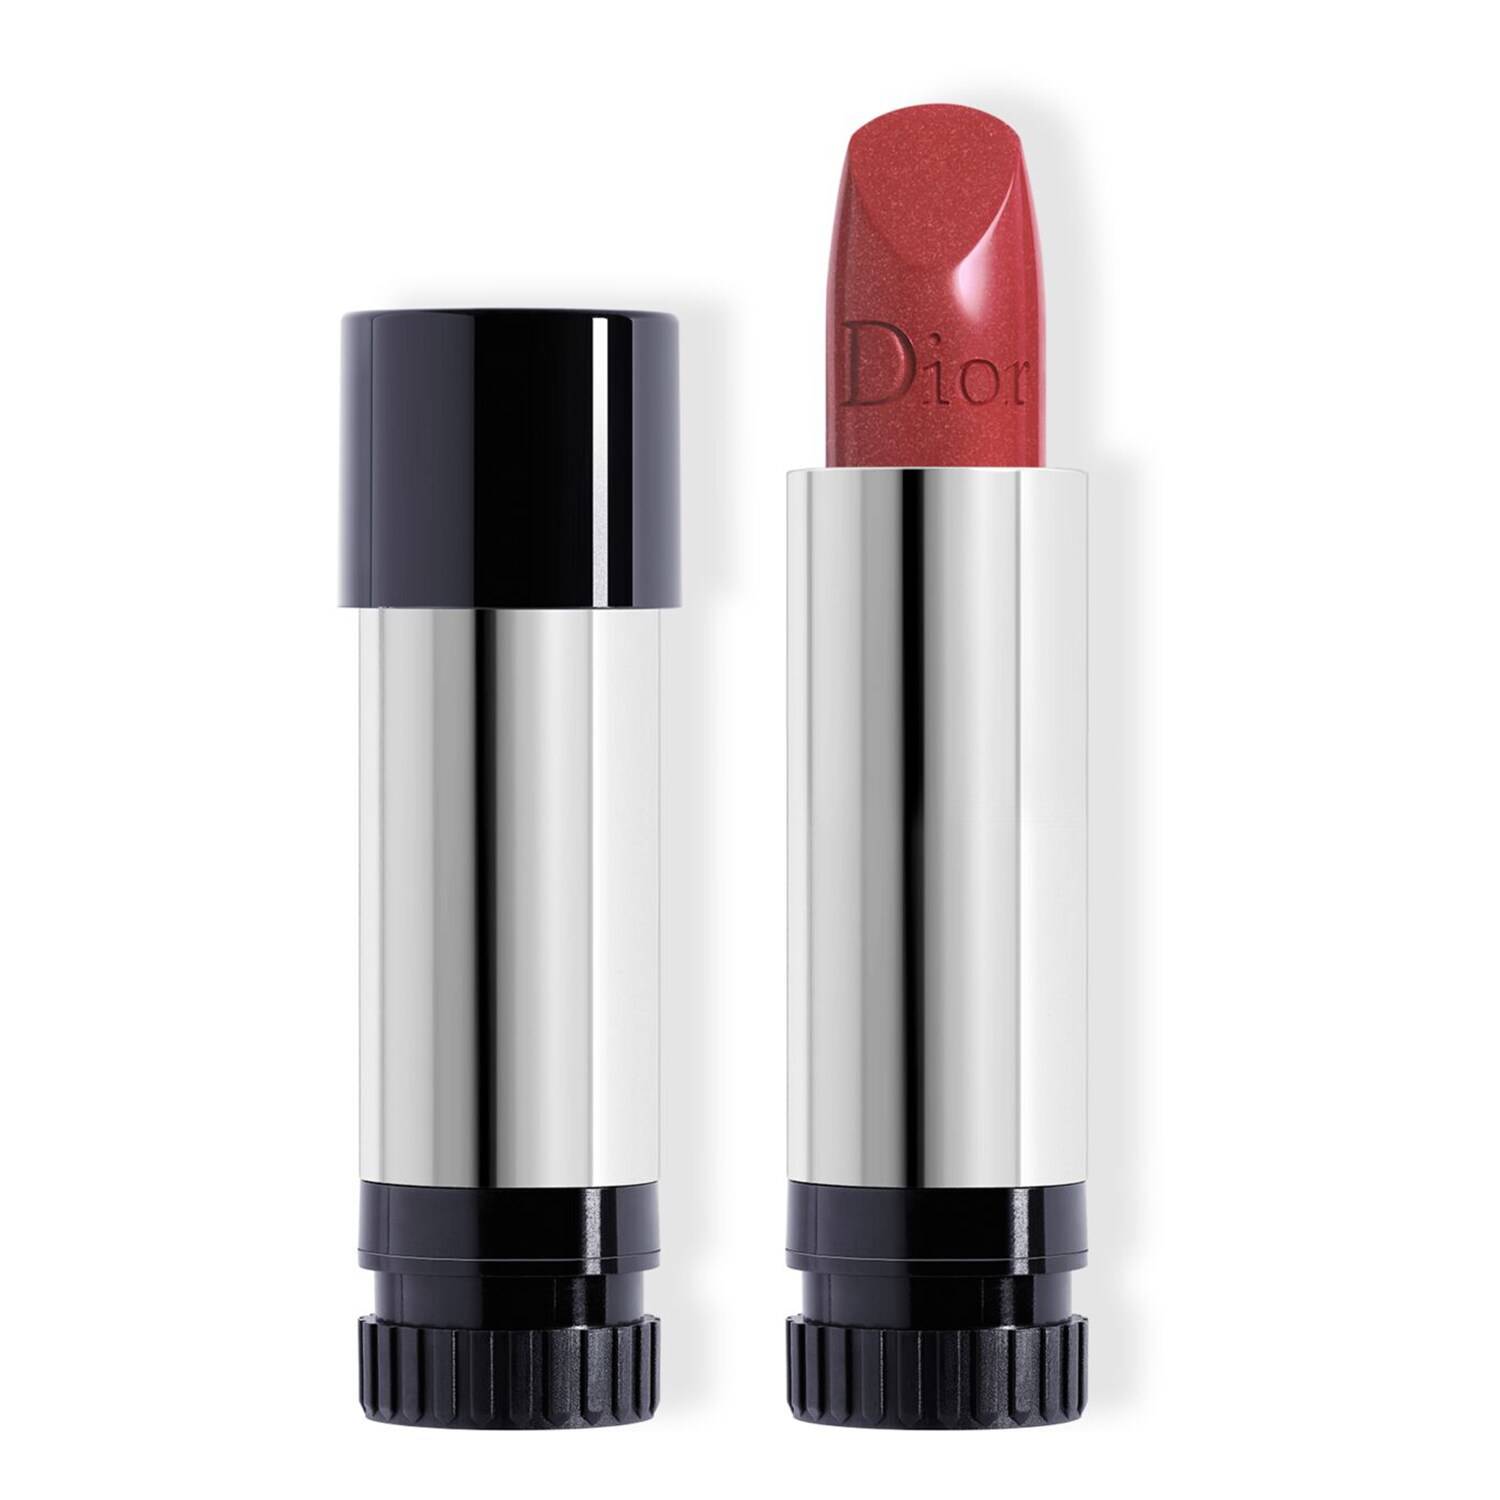 Dior Rouge Dior Couture Colour Lipstick Refill 720 Icone Metallic Finish 3.5G